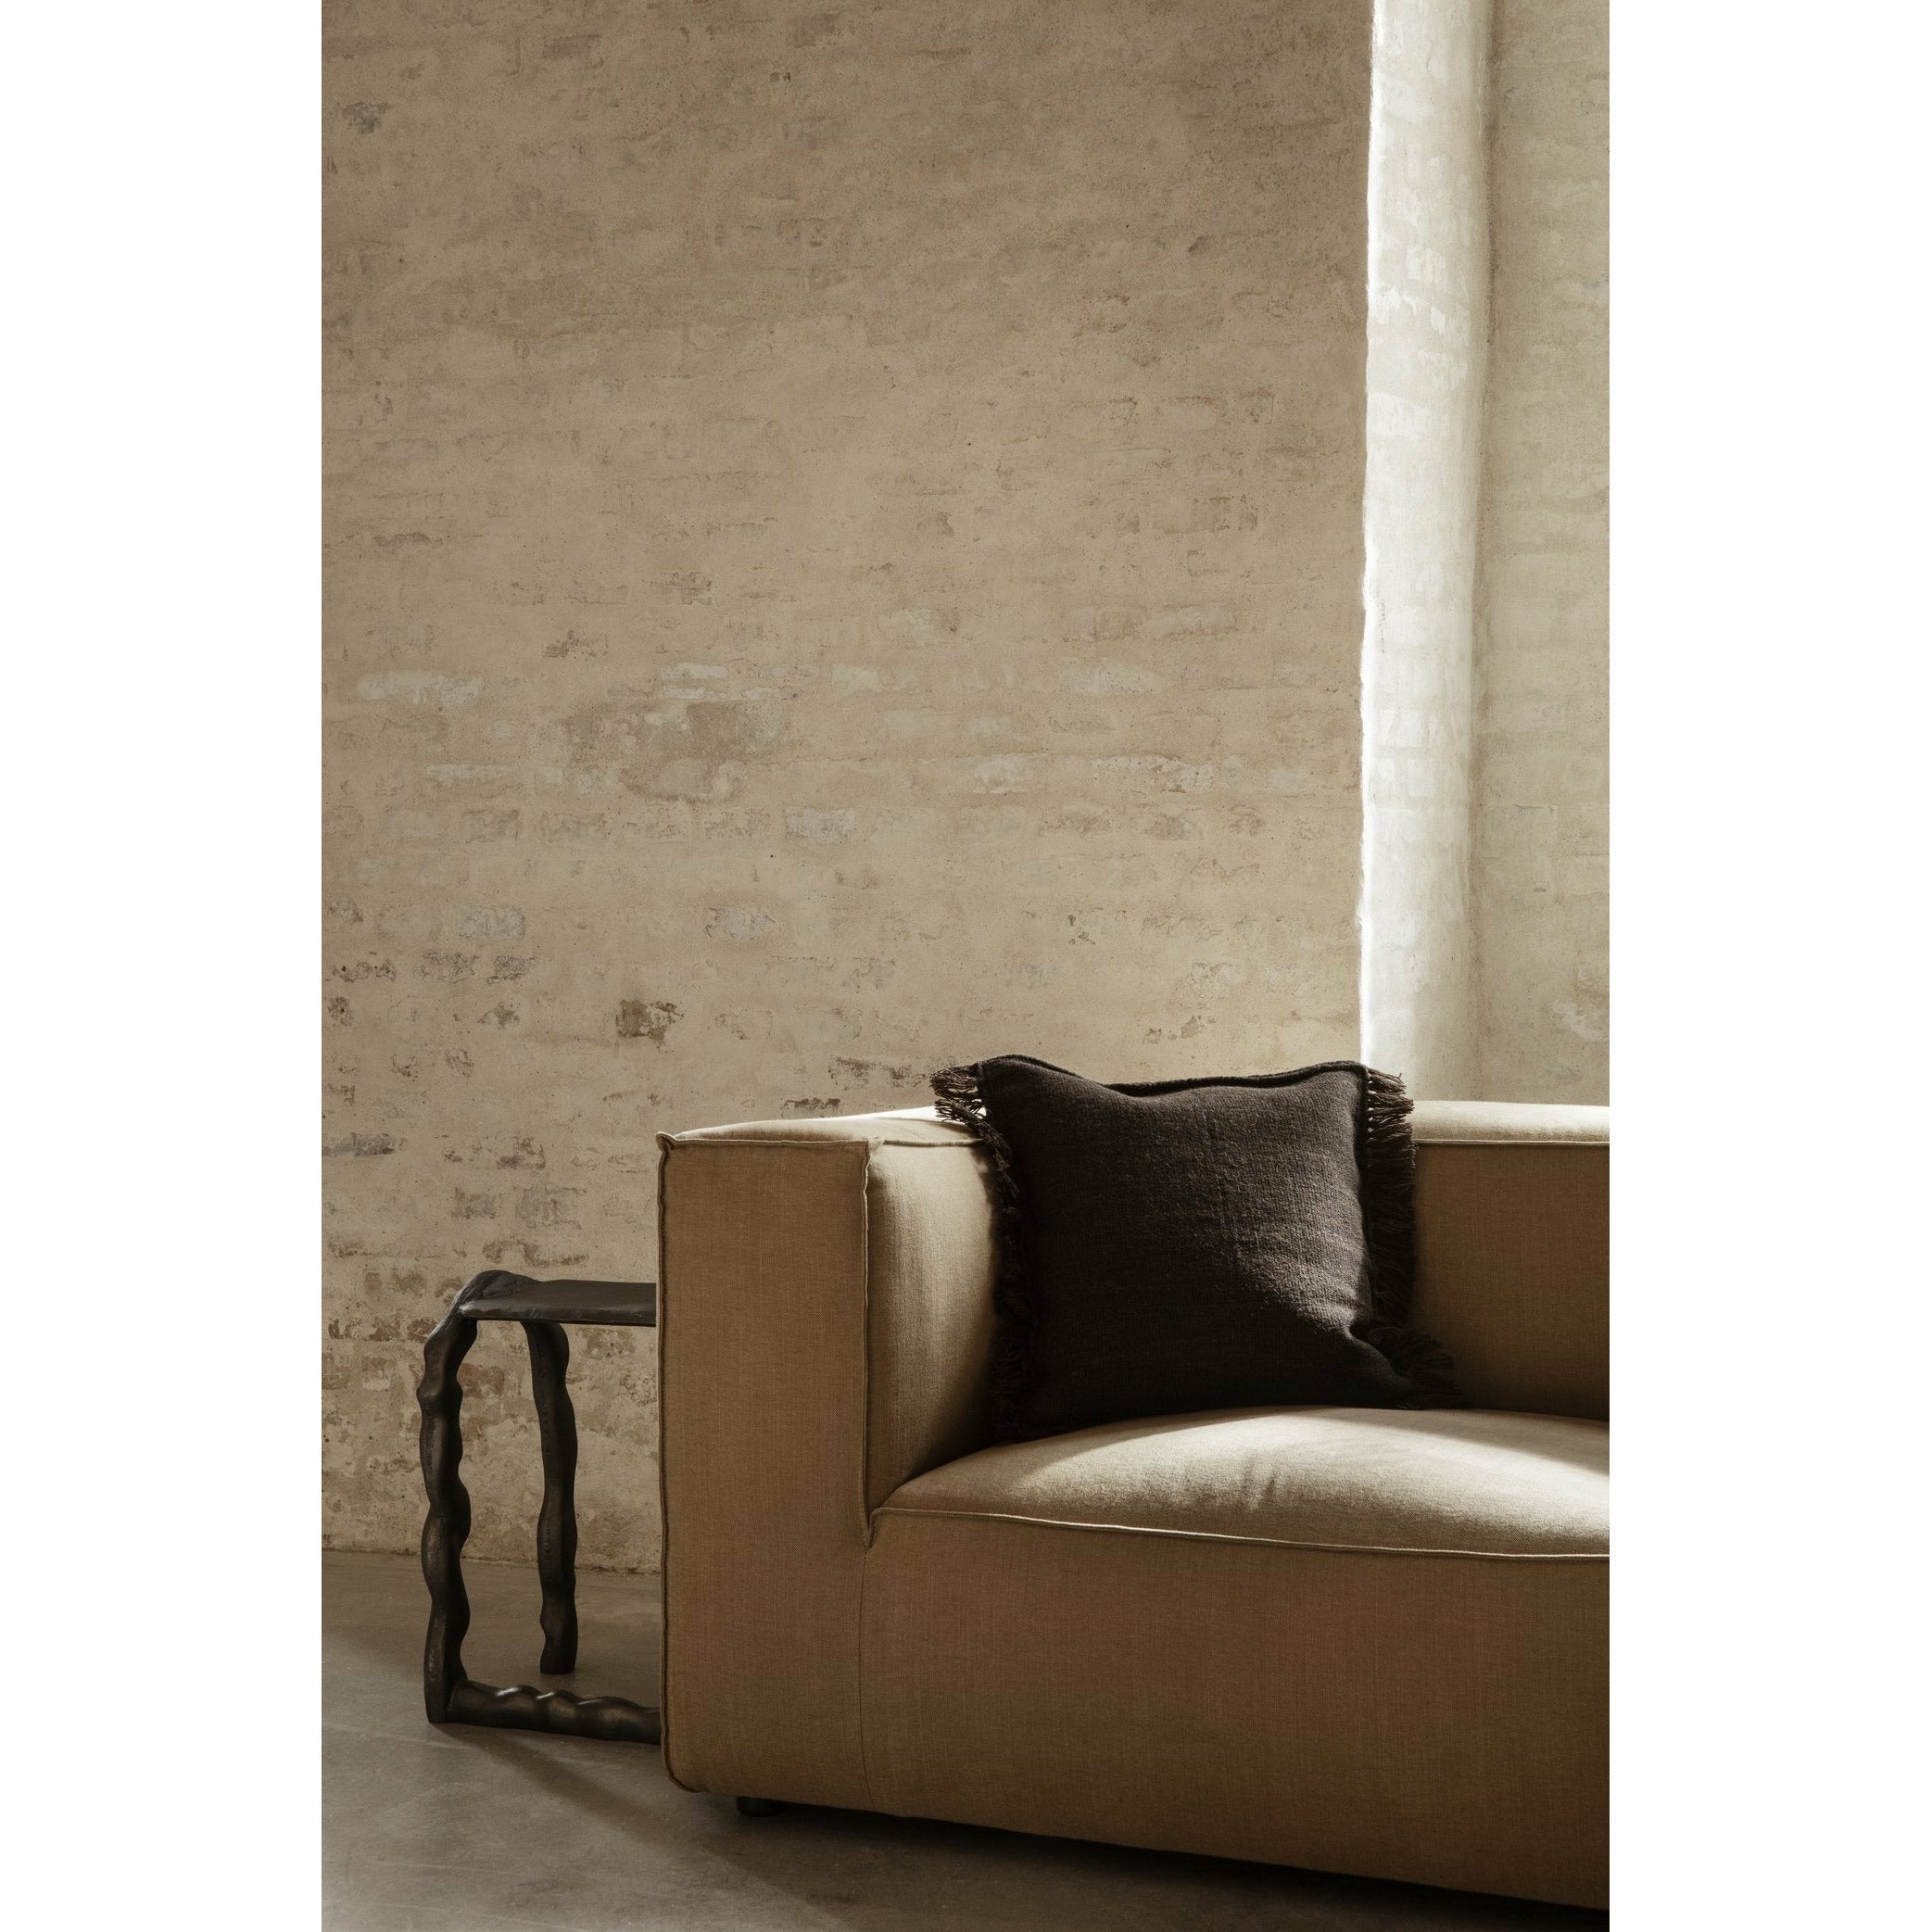 Ferm Living Catena Sofa Center S100 Rich Linen, Natural